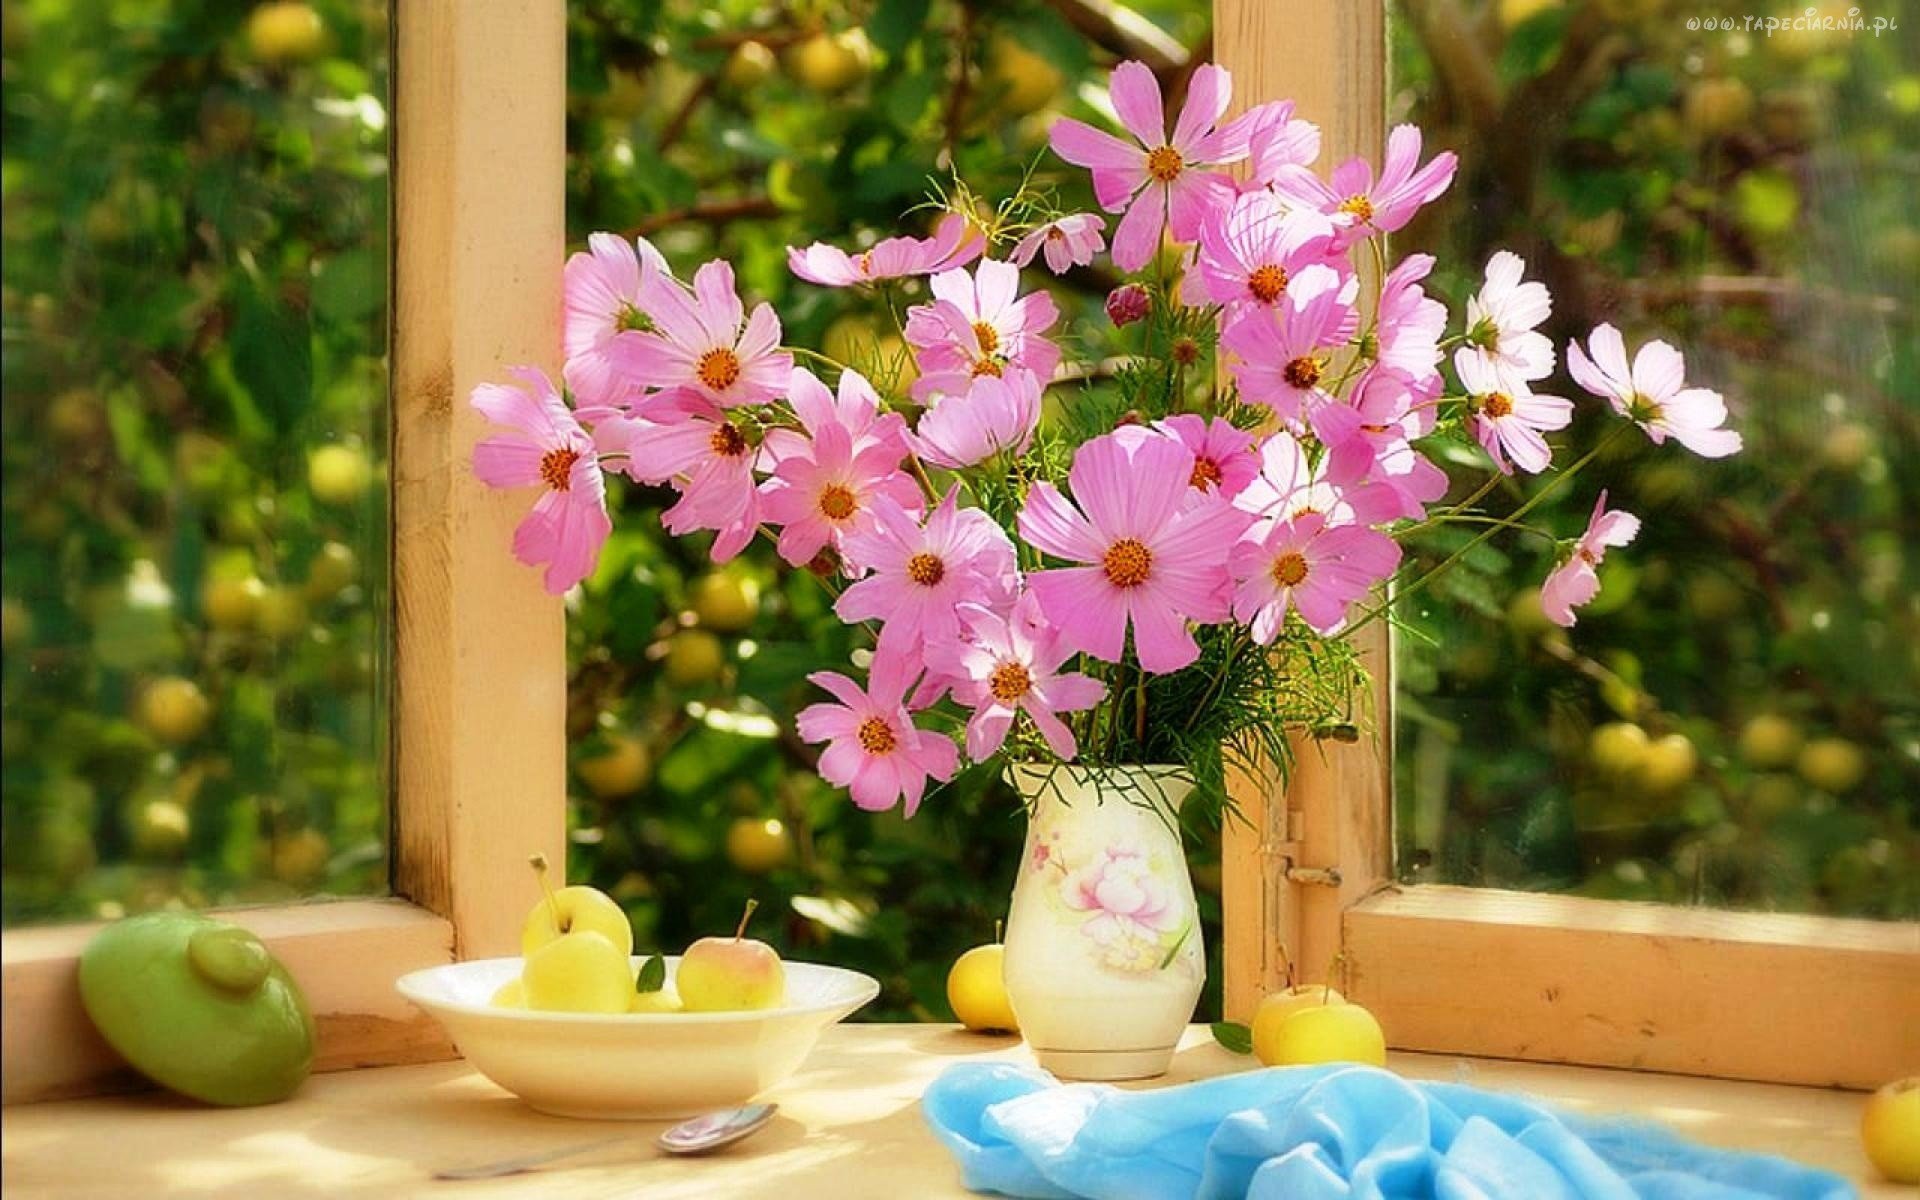 Солнечной весны и отличного настроения. Цветы на окне. Цветы в вазе на окне. Весенние цветы на окне. Летние цветы в вазе.